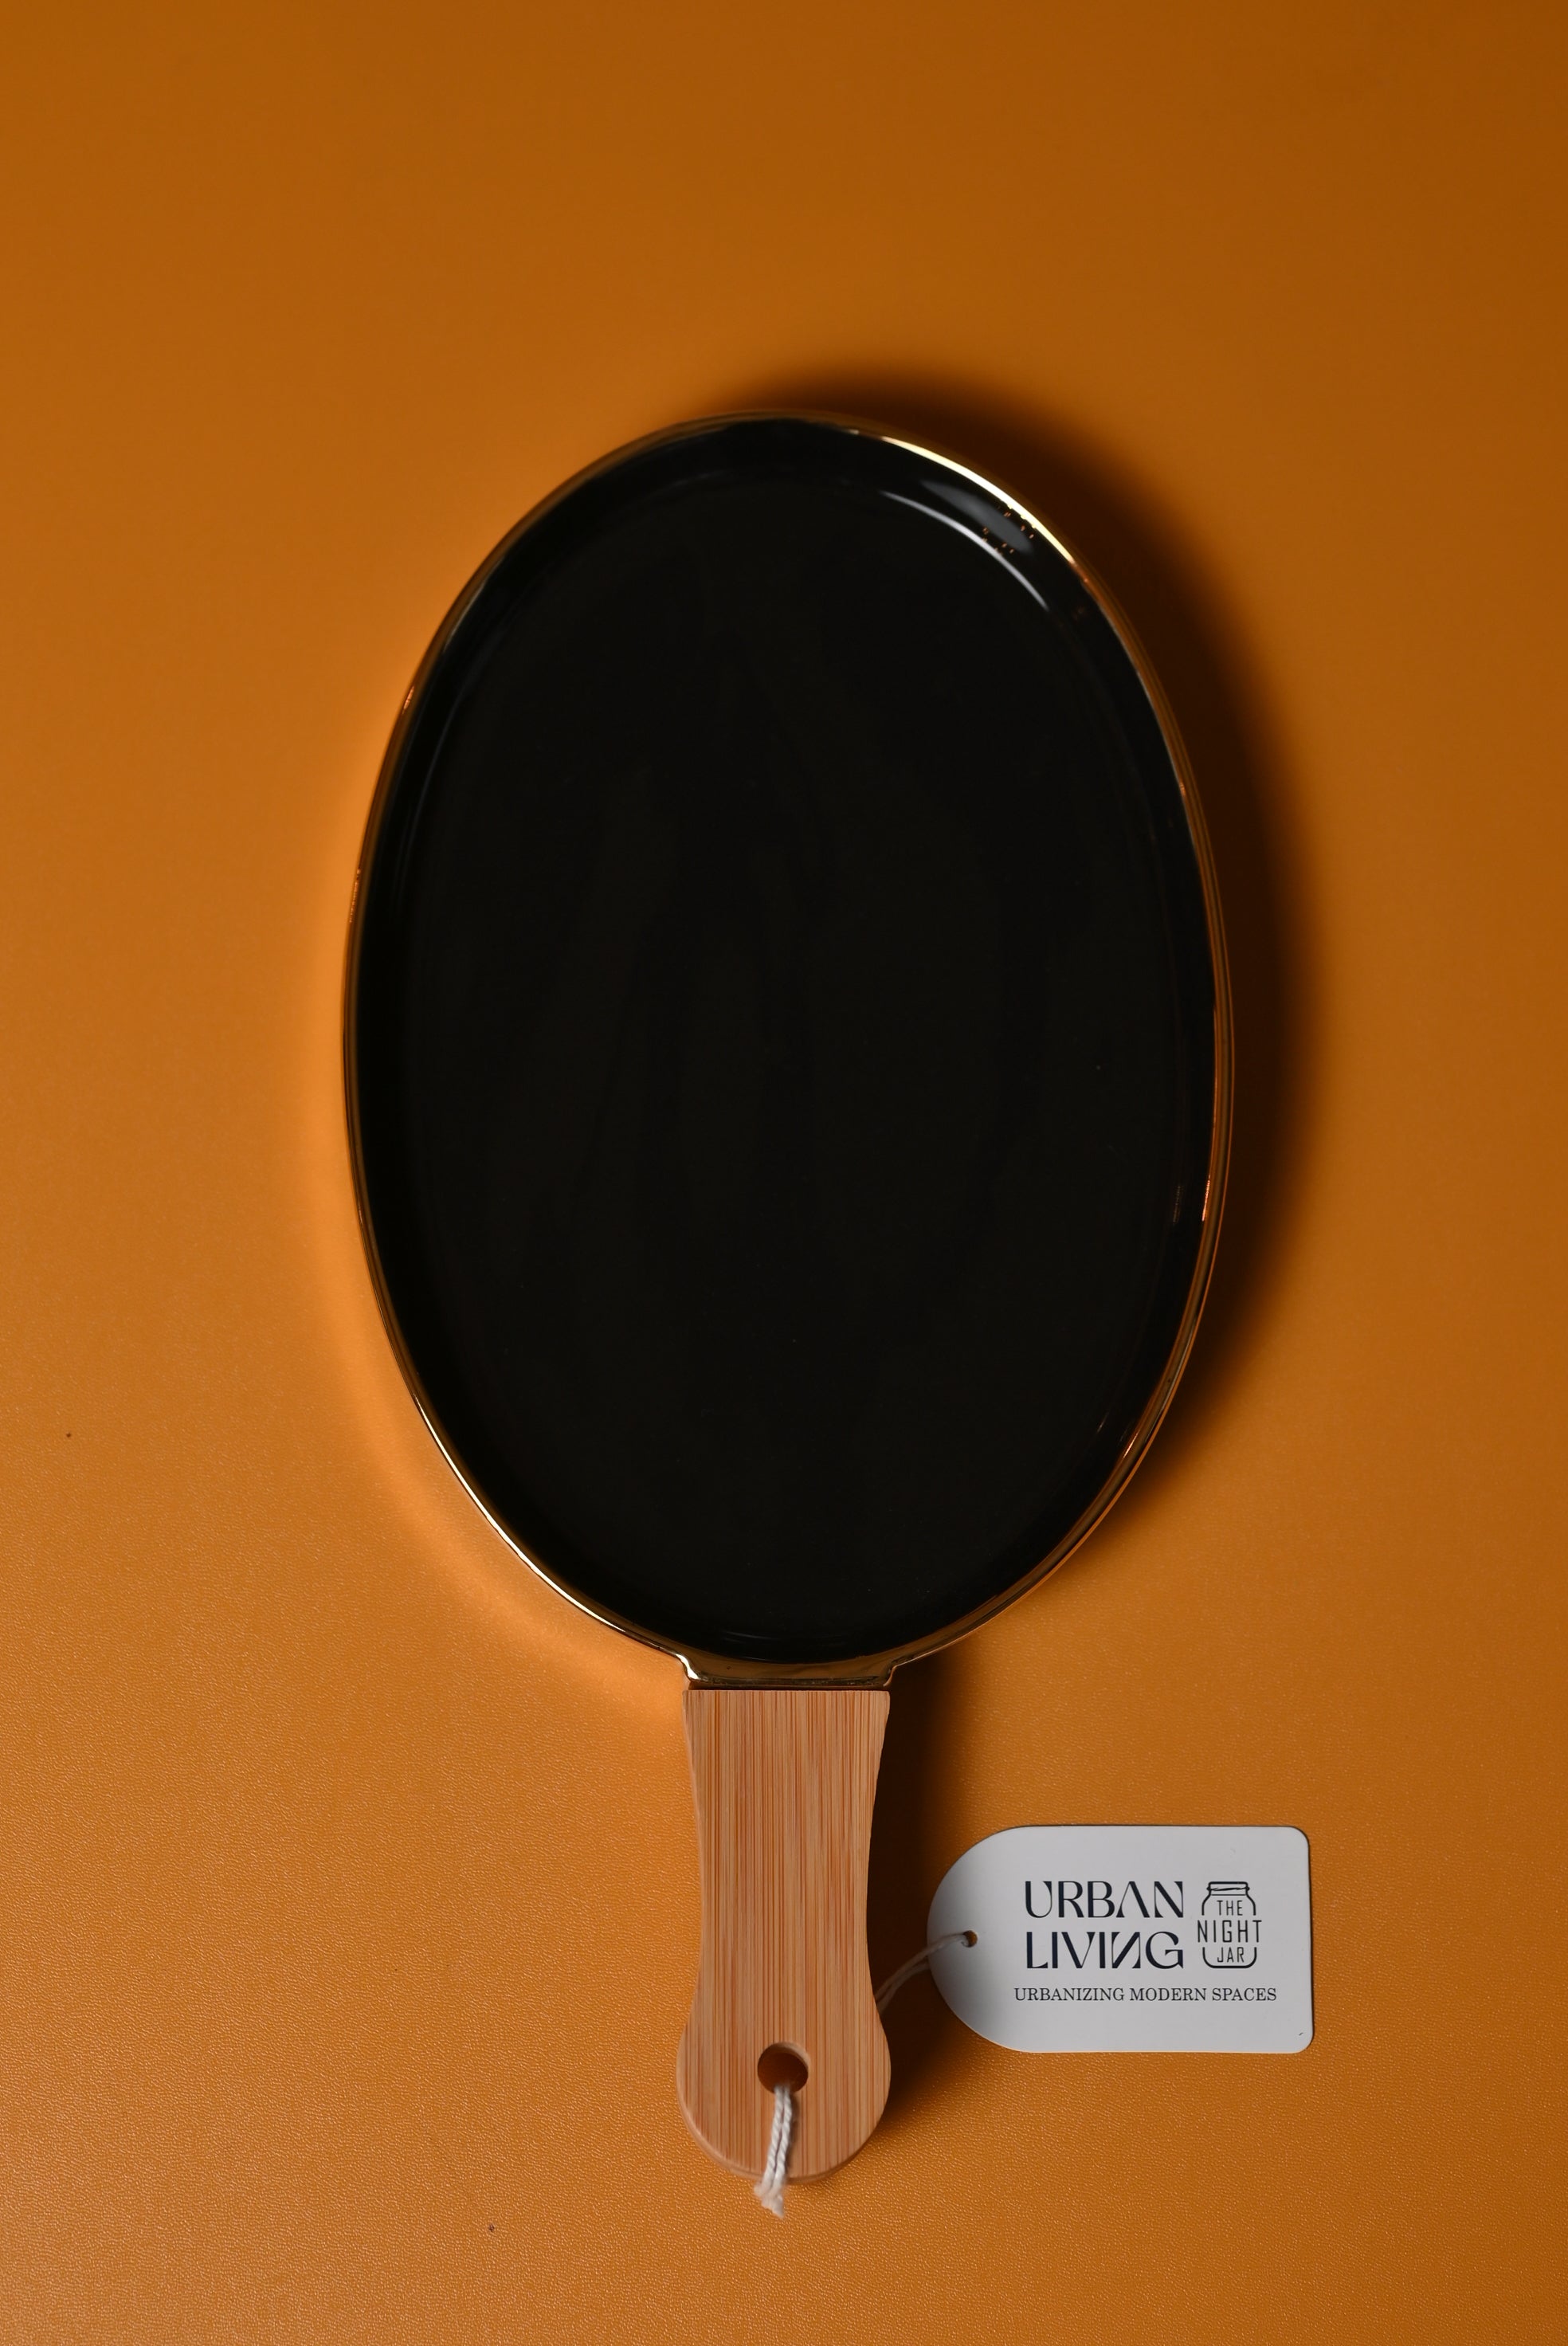 Oval Black Porcelain Platter with Wooden Handle